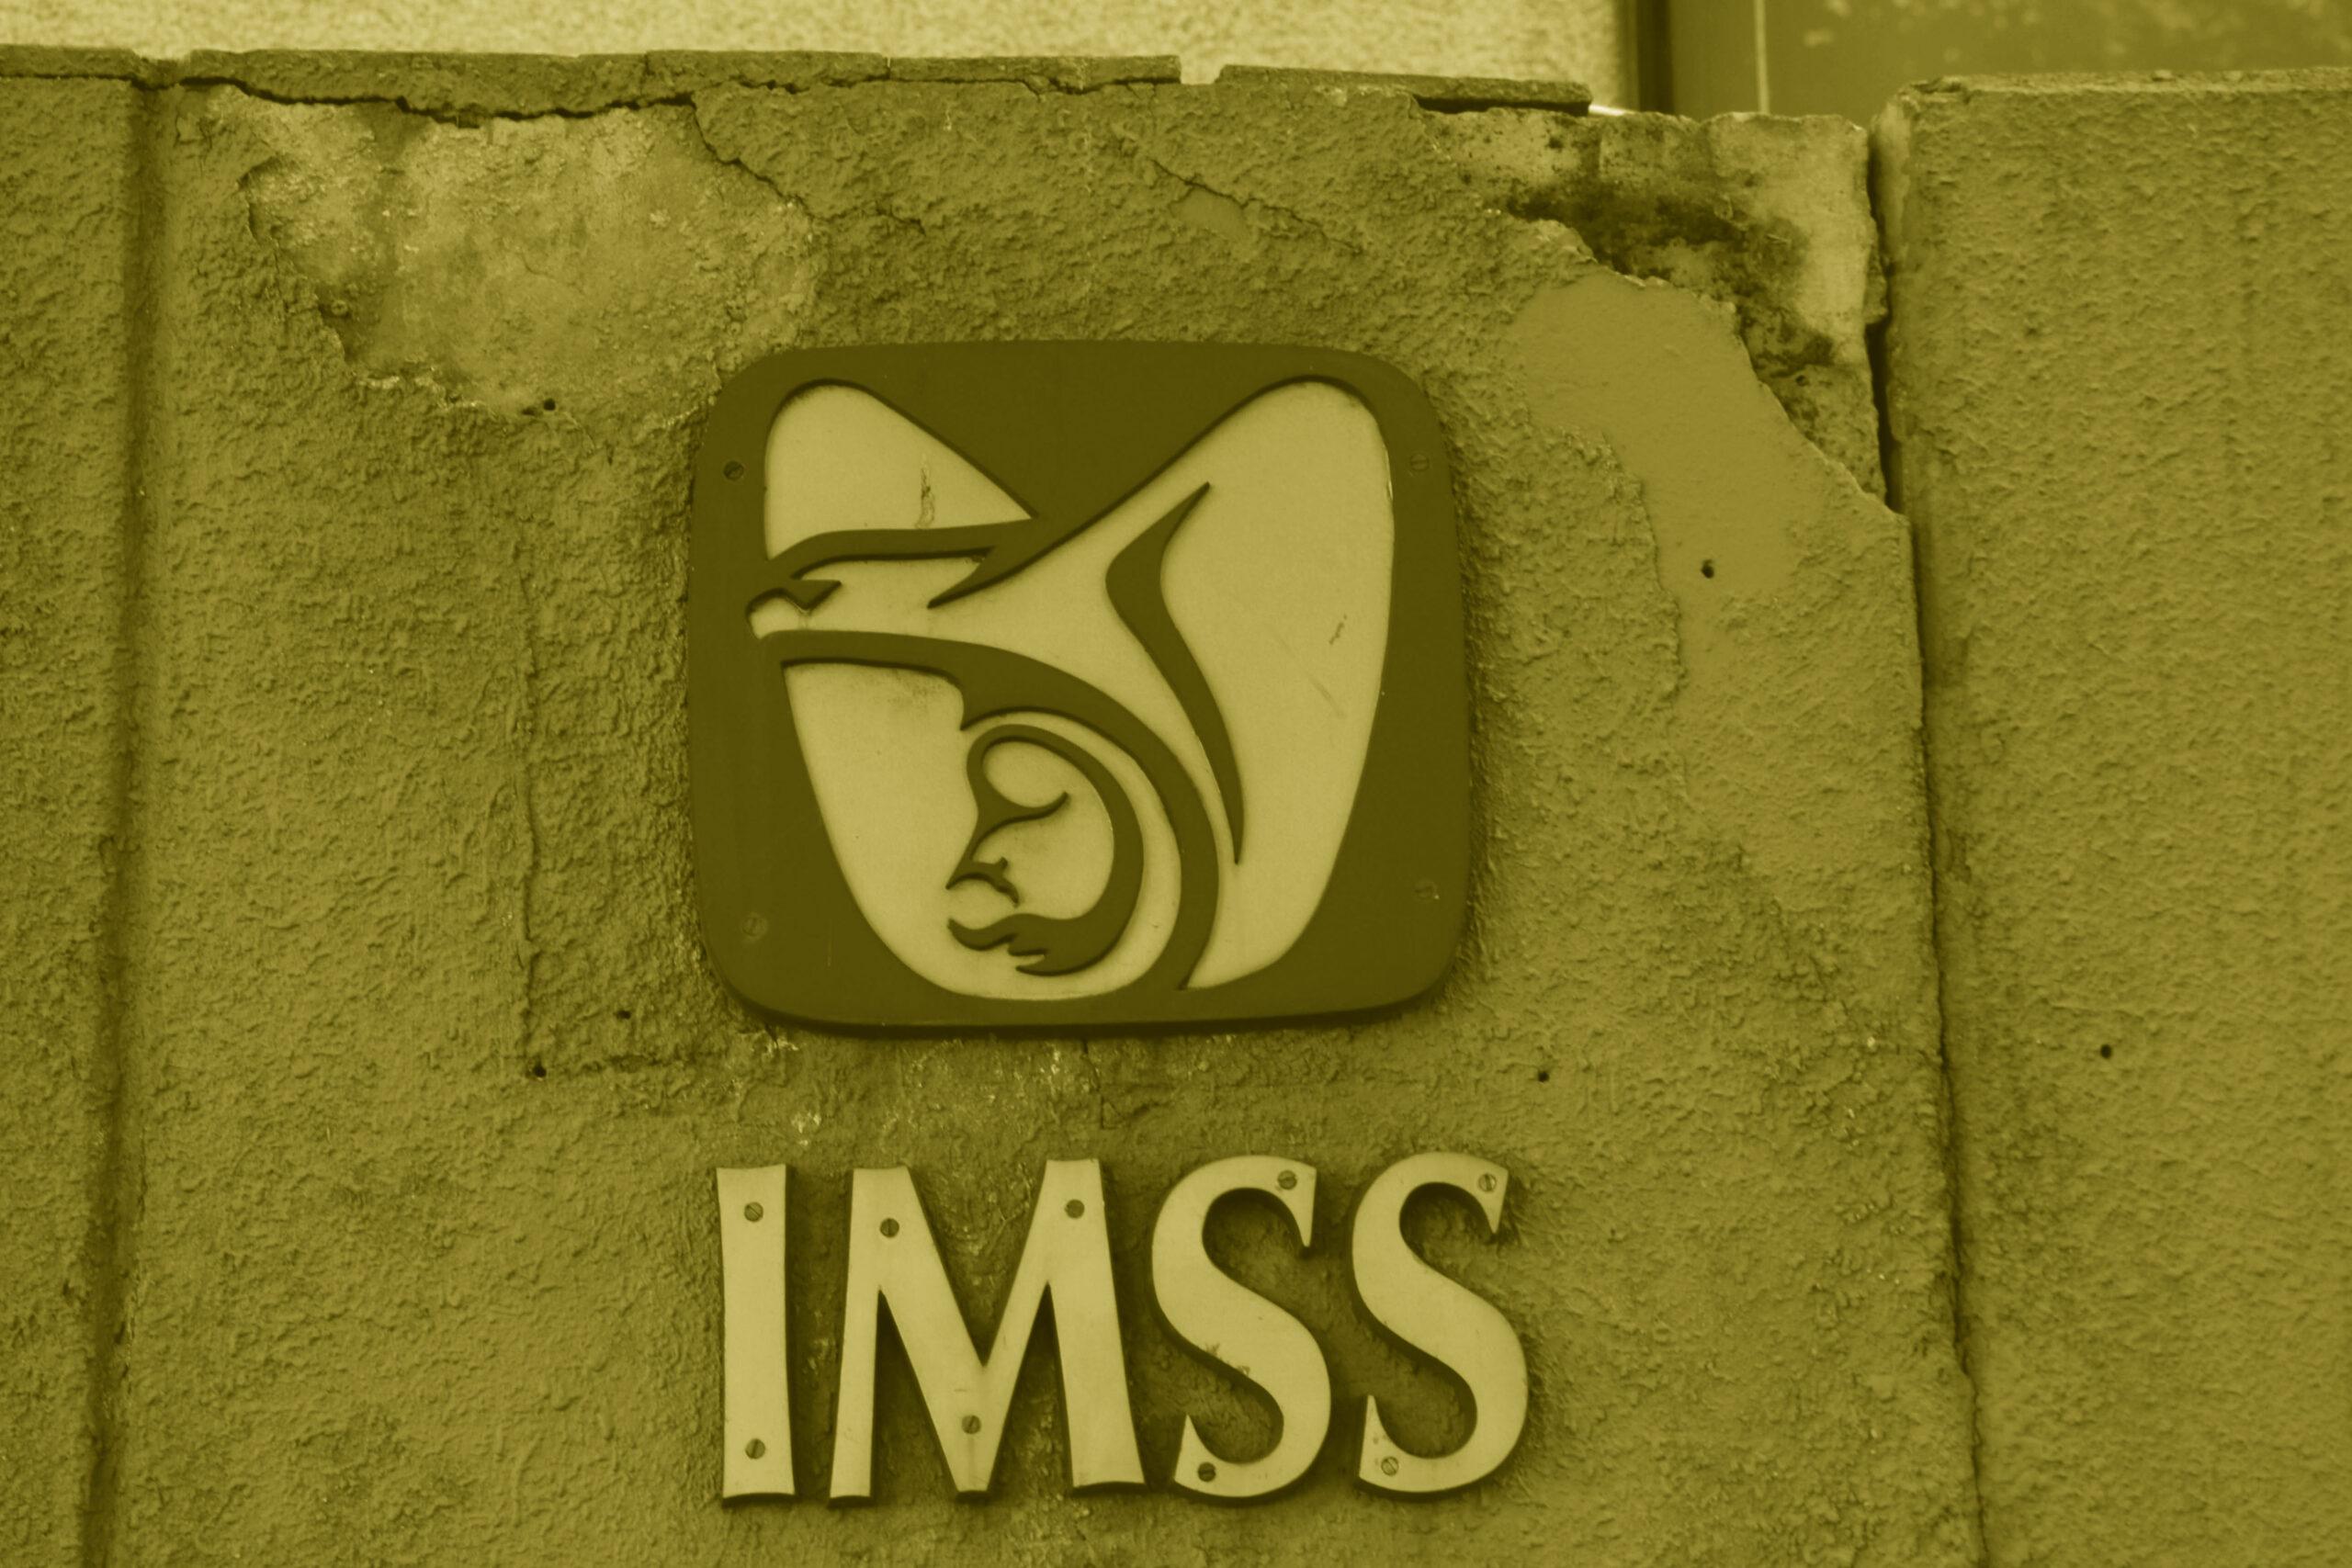 Red proveedora del IMSS falsifica marcas y registros sanitarios para vender equipo médico